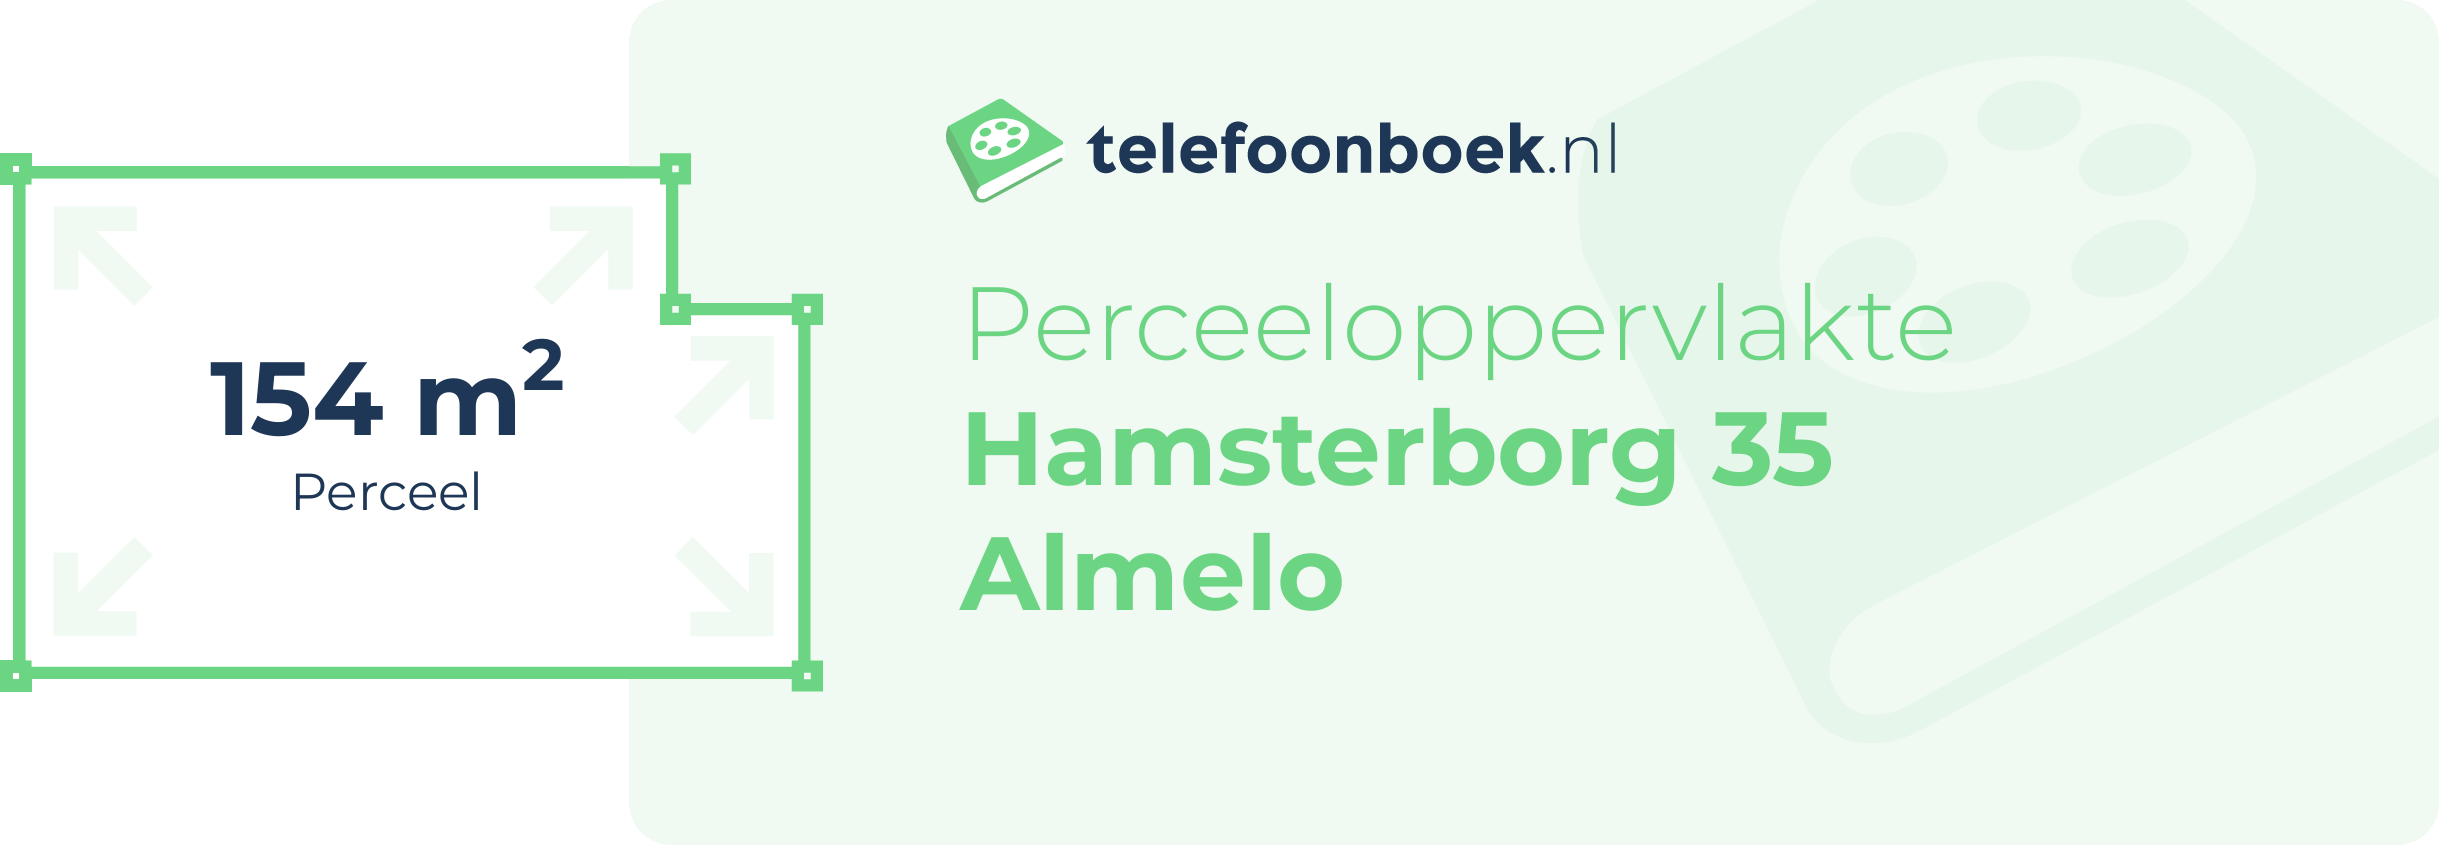 Perceeloppervlakte Hamsterborg 35 Almelo